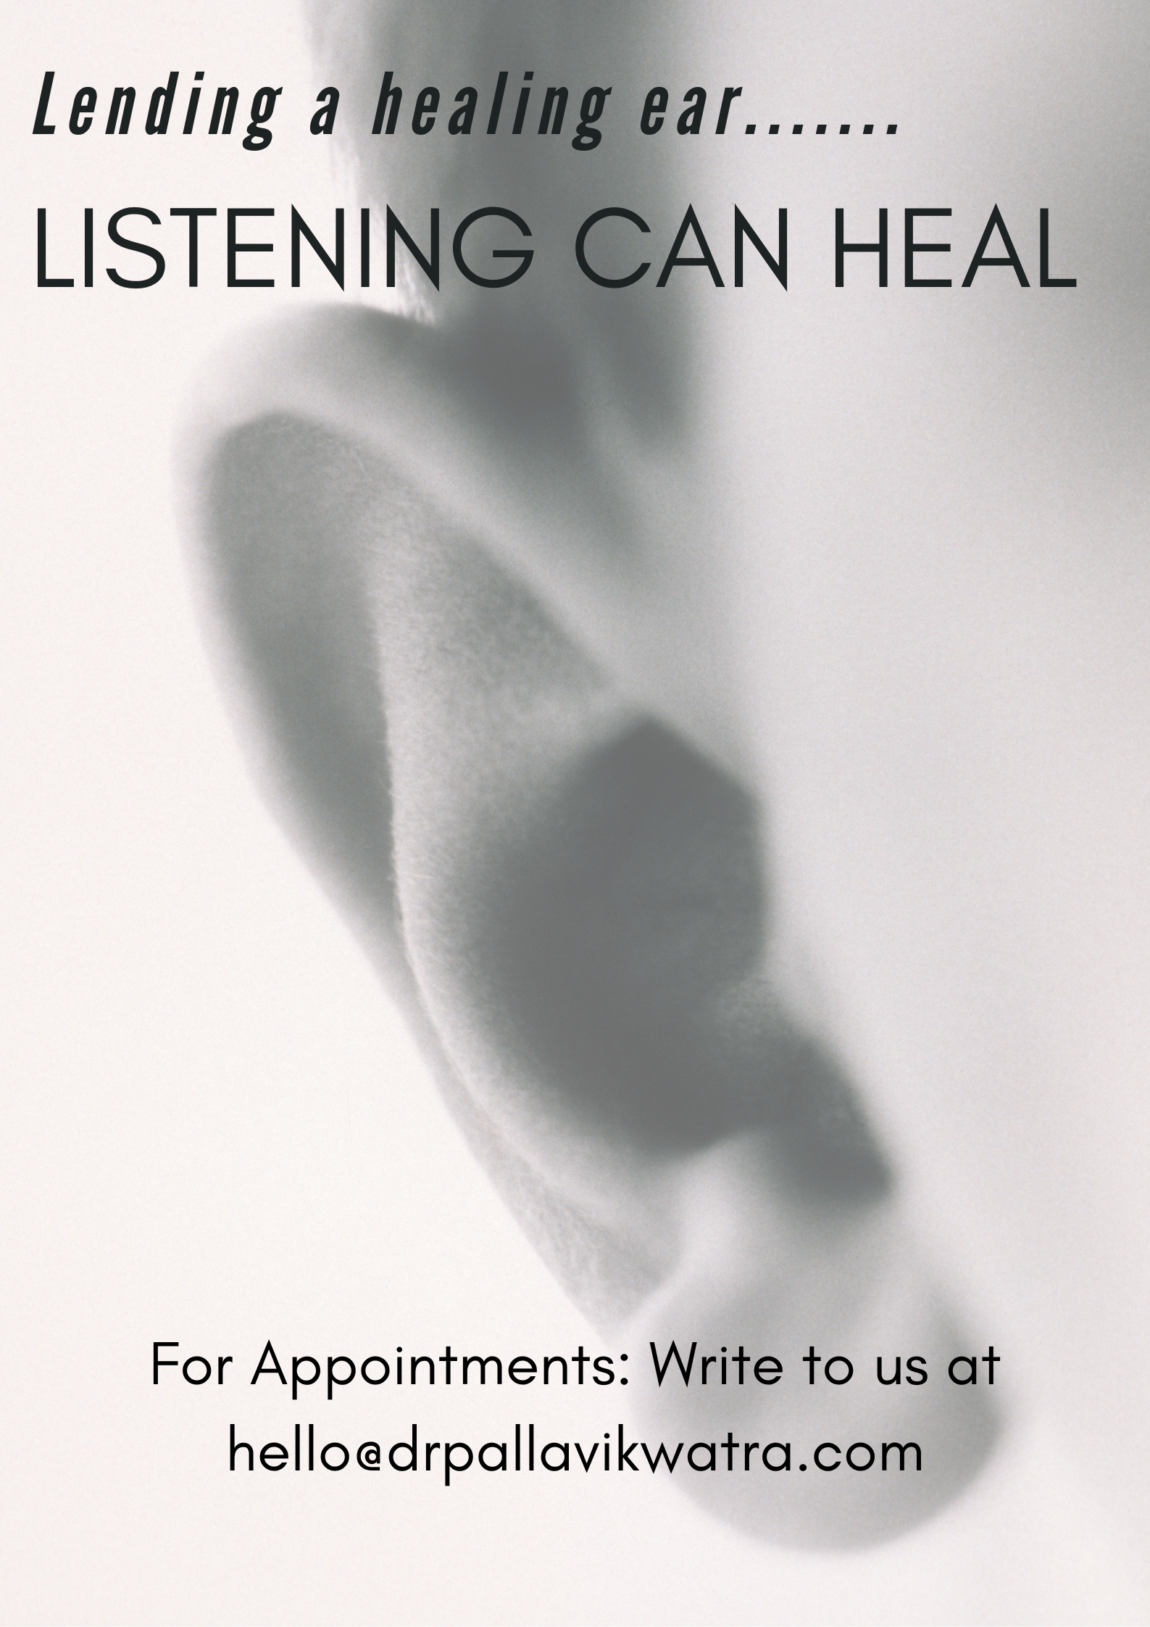 Lending-a-healing-ear.......-1.png